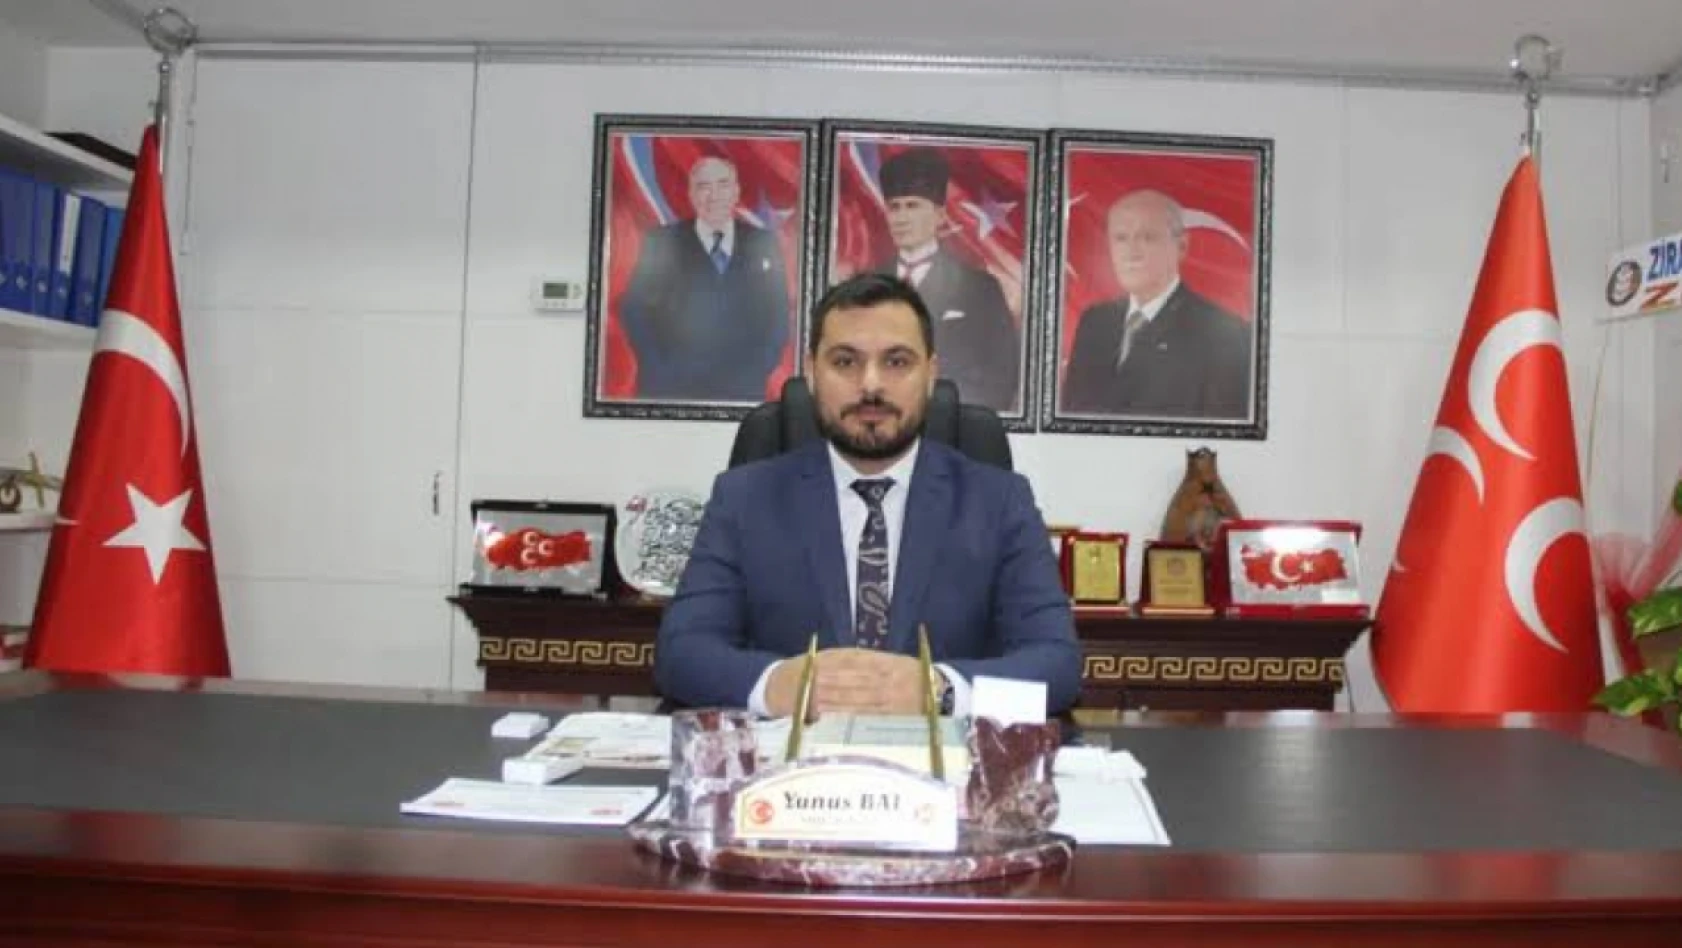 MHP Elazığ İl Başkanı Yunus Bal'dan Basın Açıklaması